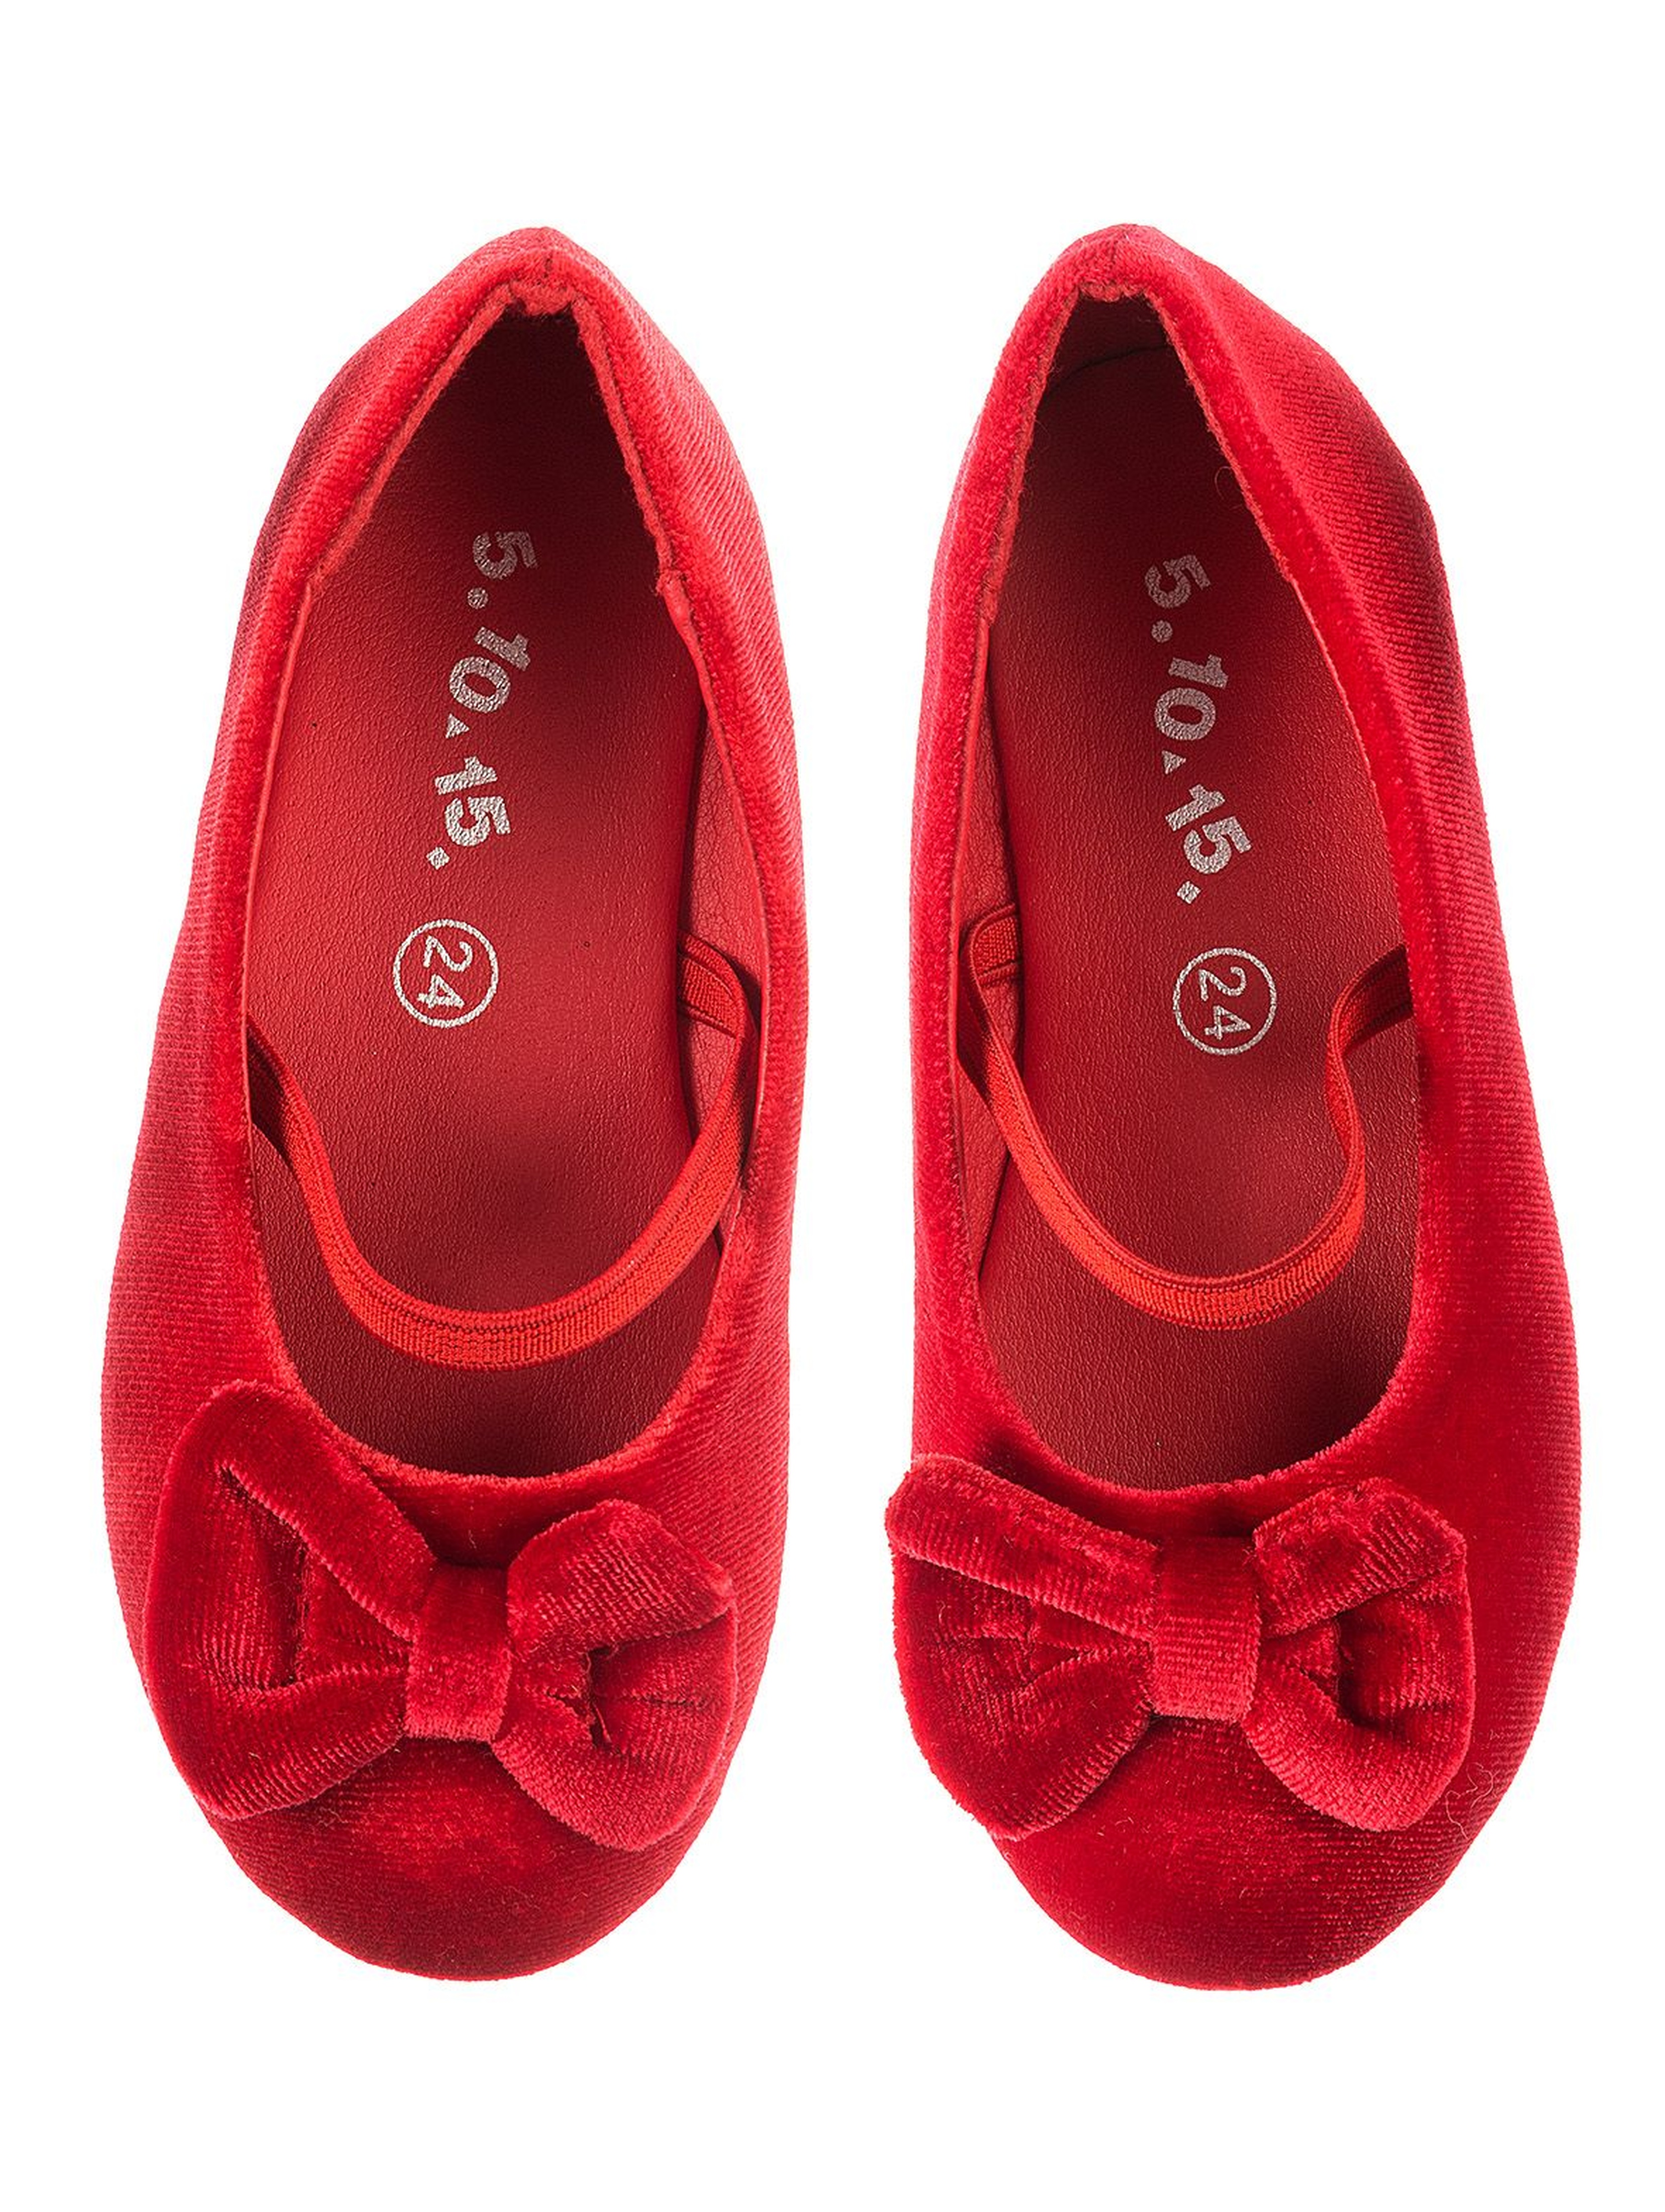 Buty baleriny dziewczęce czerwone z kokardą